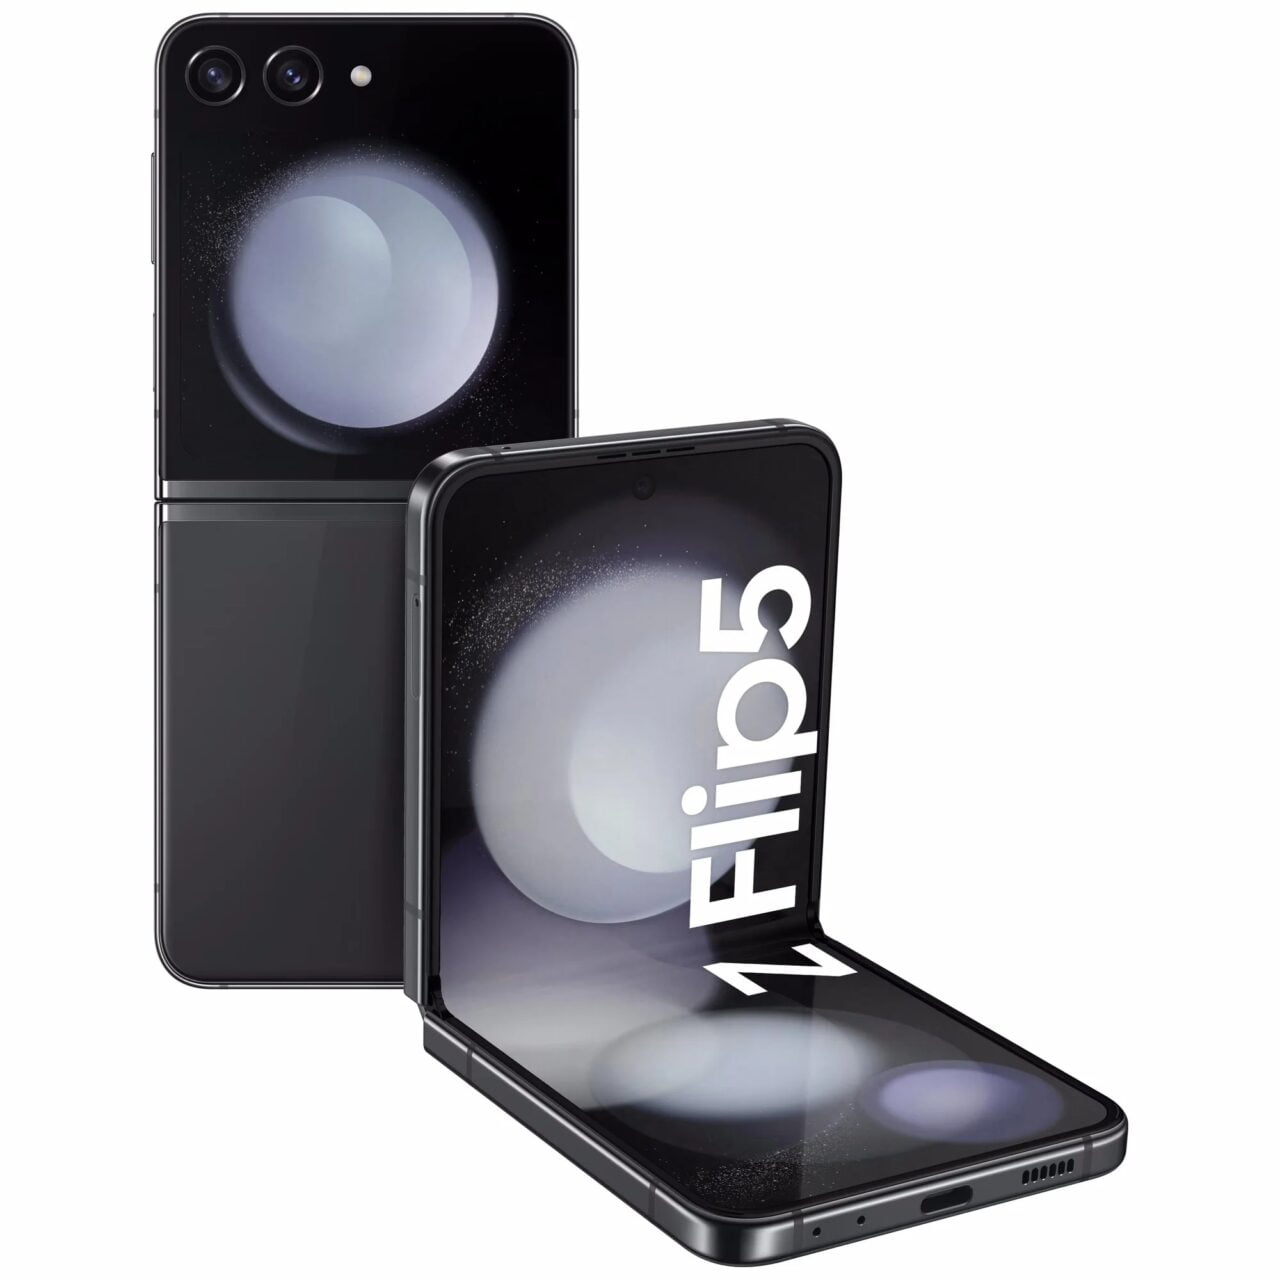 Czarny składany smartfon z podwójnym aparatem, wyświetlacz otwarty w kształcie litery "L".